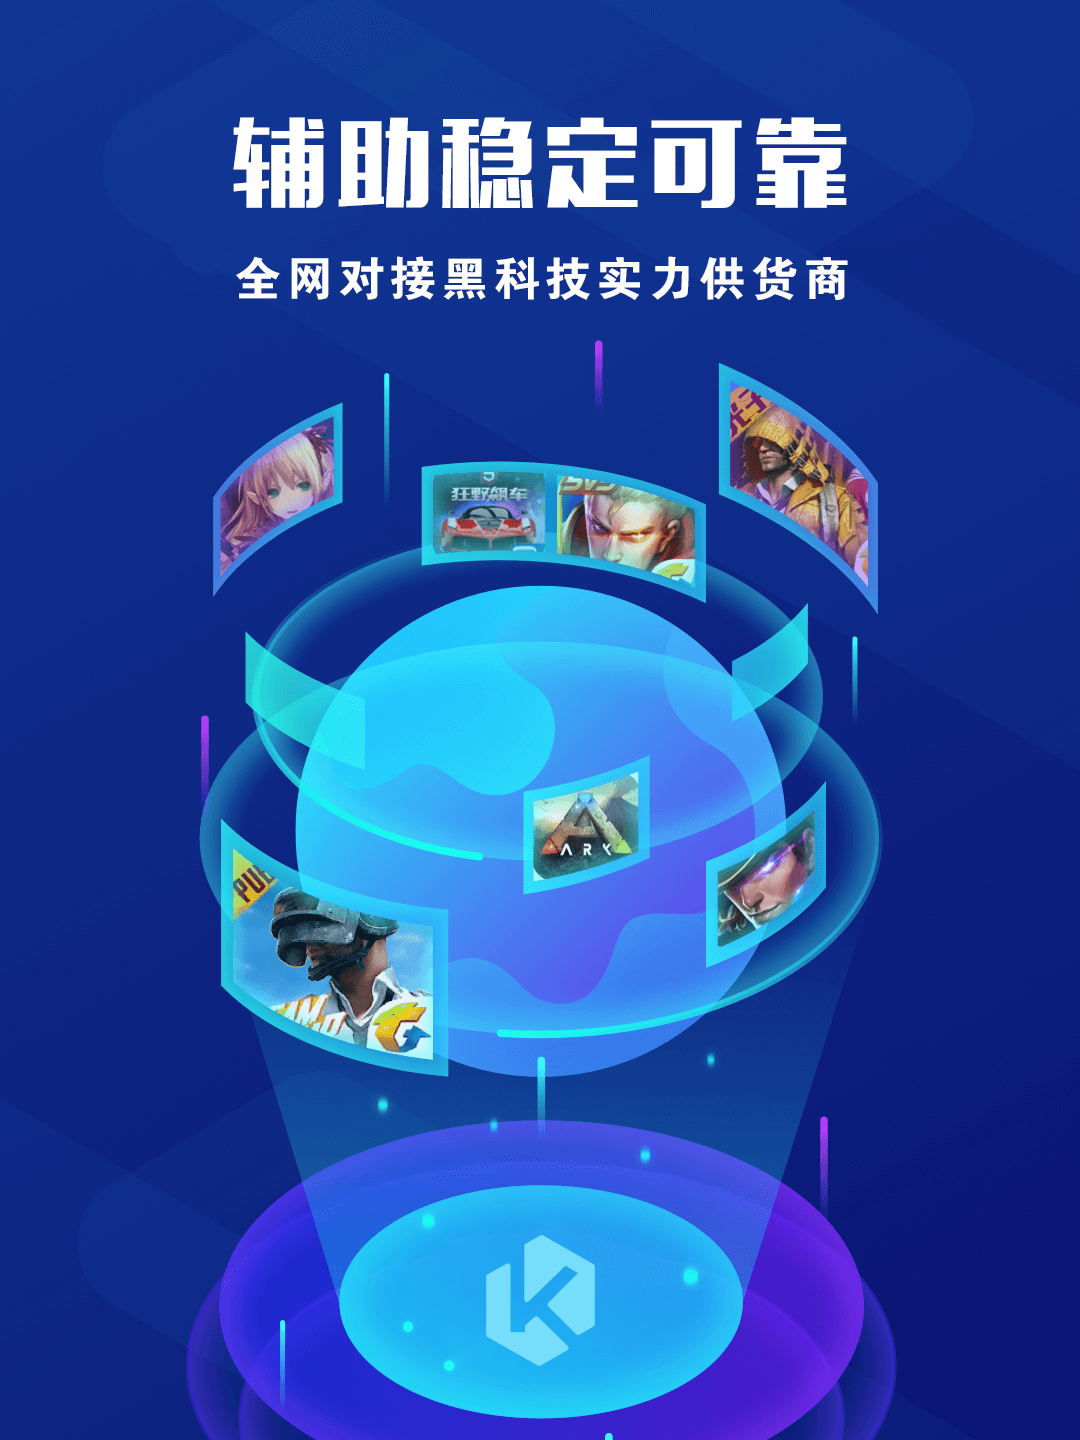 seo优化-辅助卡盟平台,全球畅玩,炫酷黑科技，一键畅玩海内外游戏